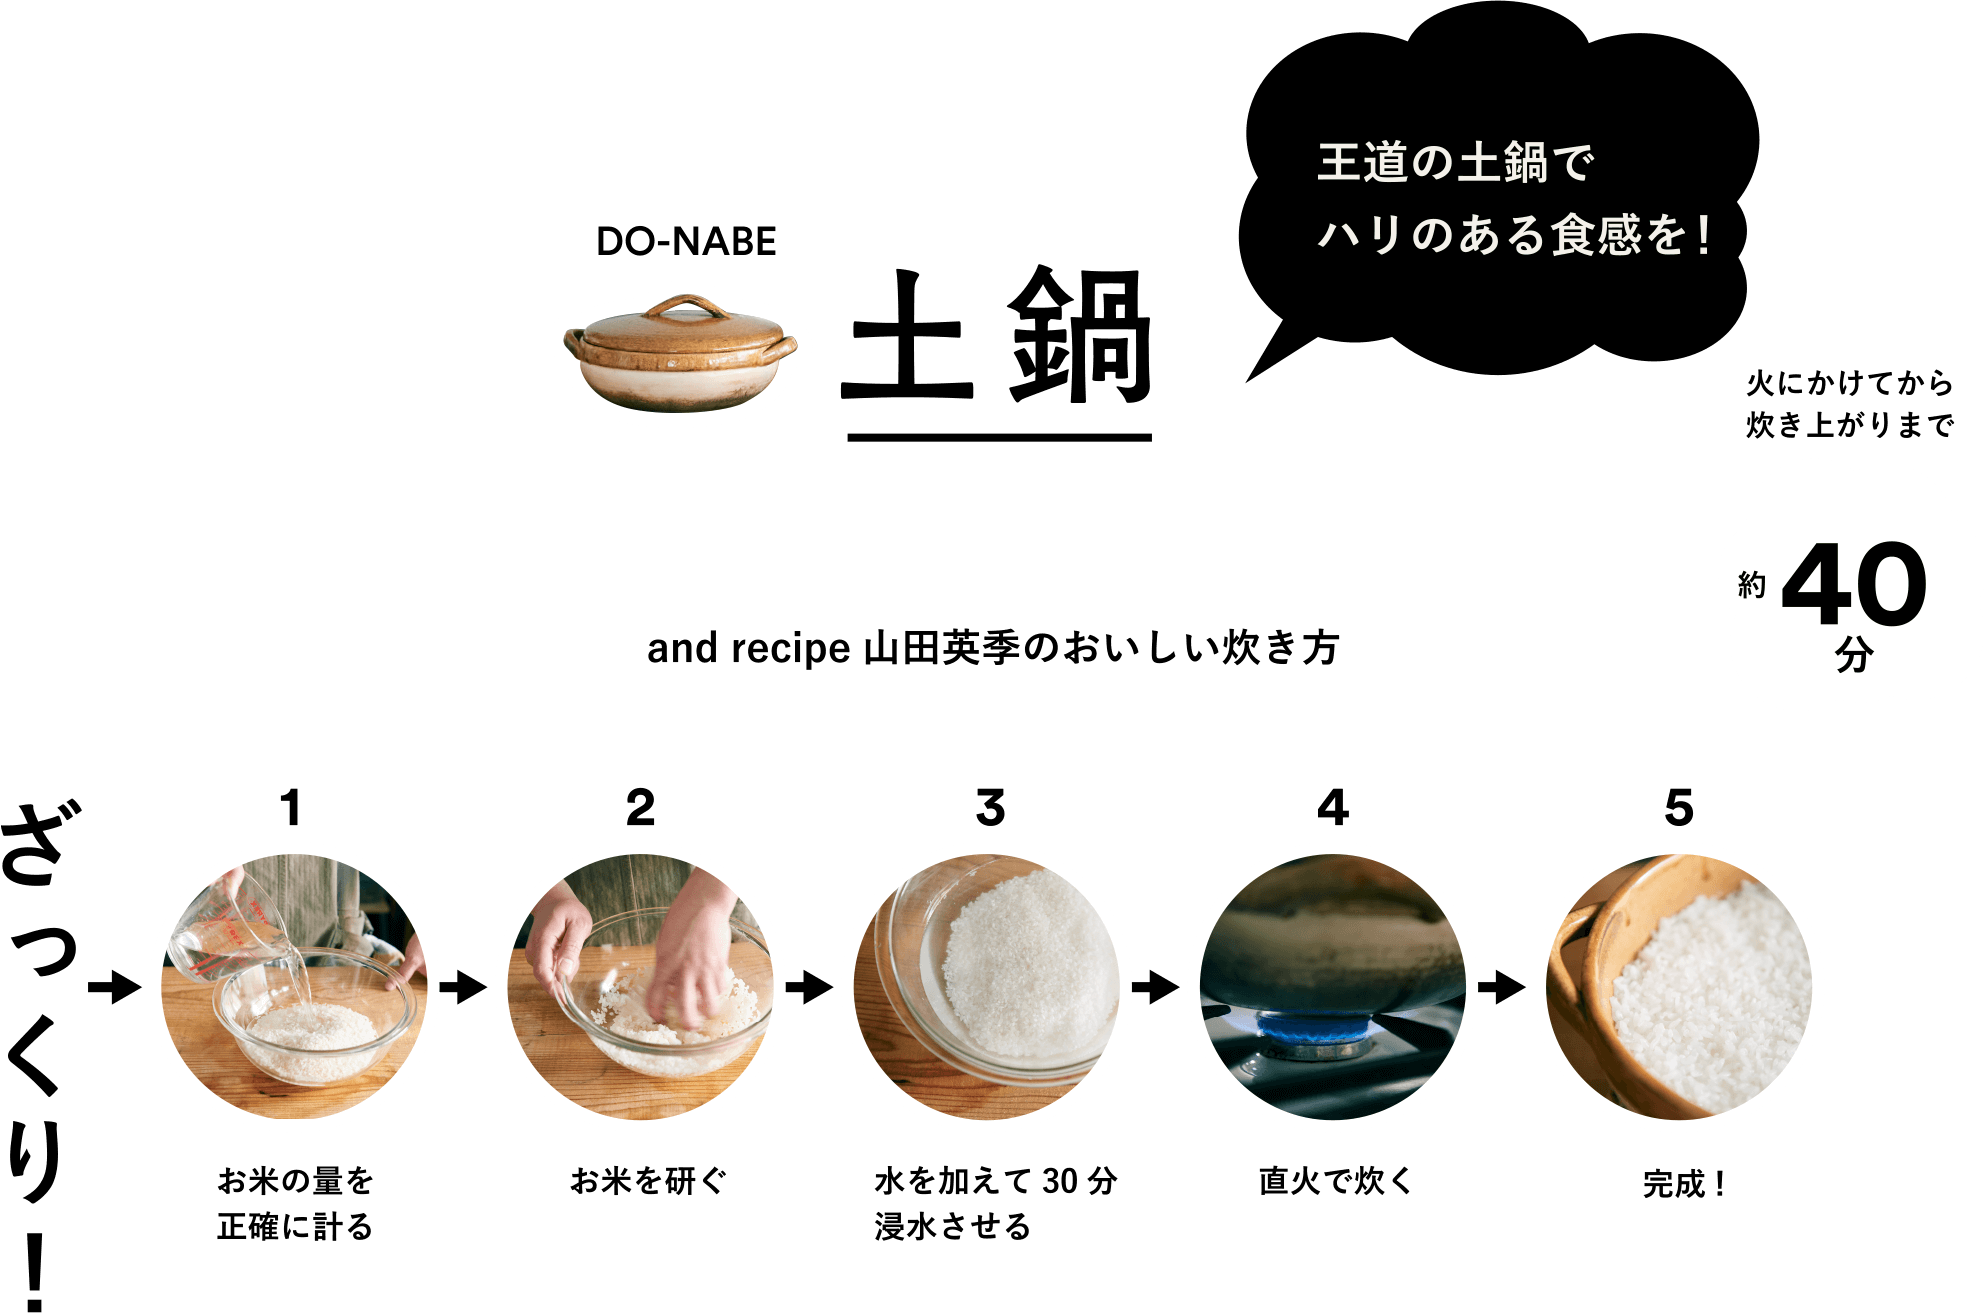 土鍋 and recipe 山田英季のおいしい炊き方